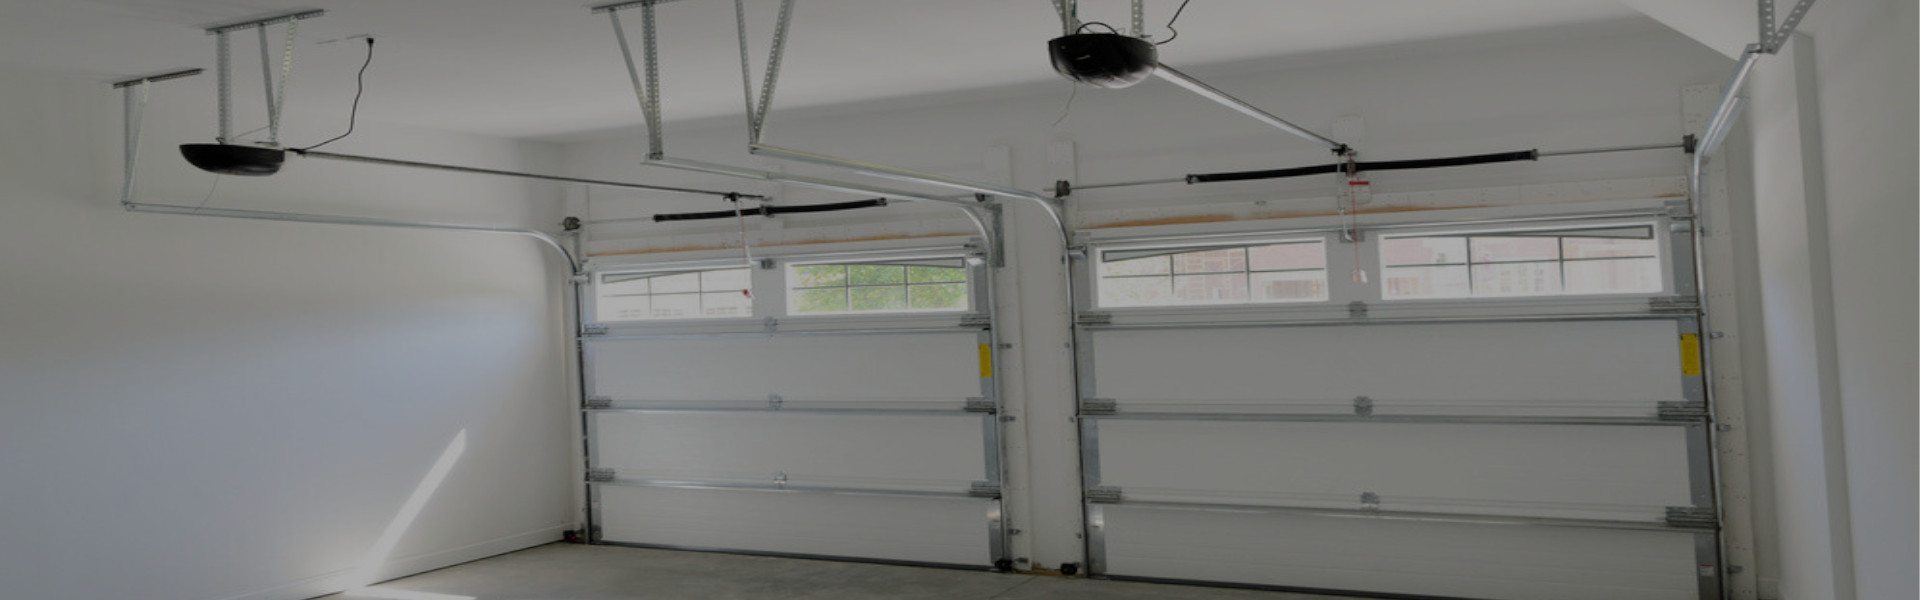 Slider Garage Door Repair, Glaziers in Wandsworth, SW18